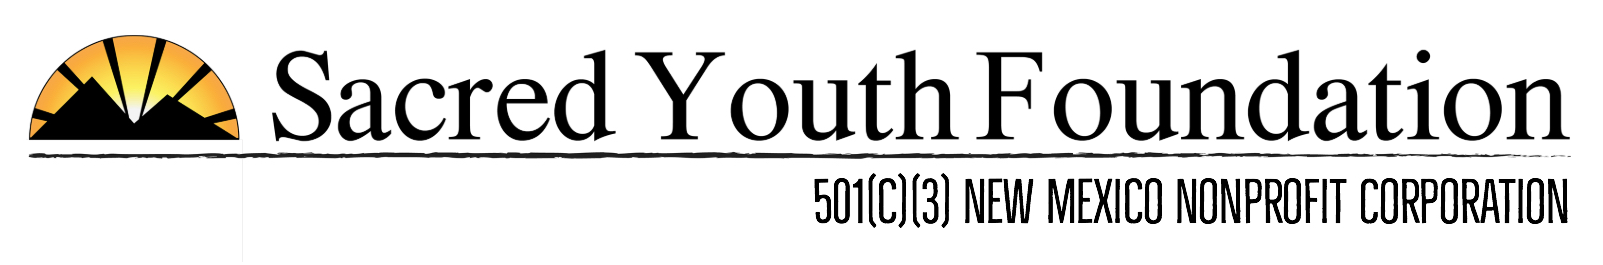 Sacred Youth Foundation